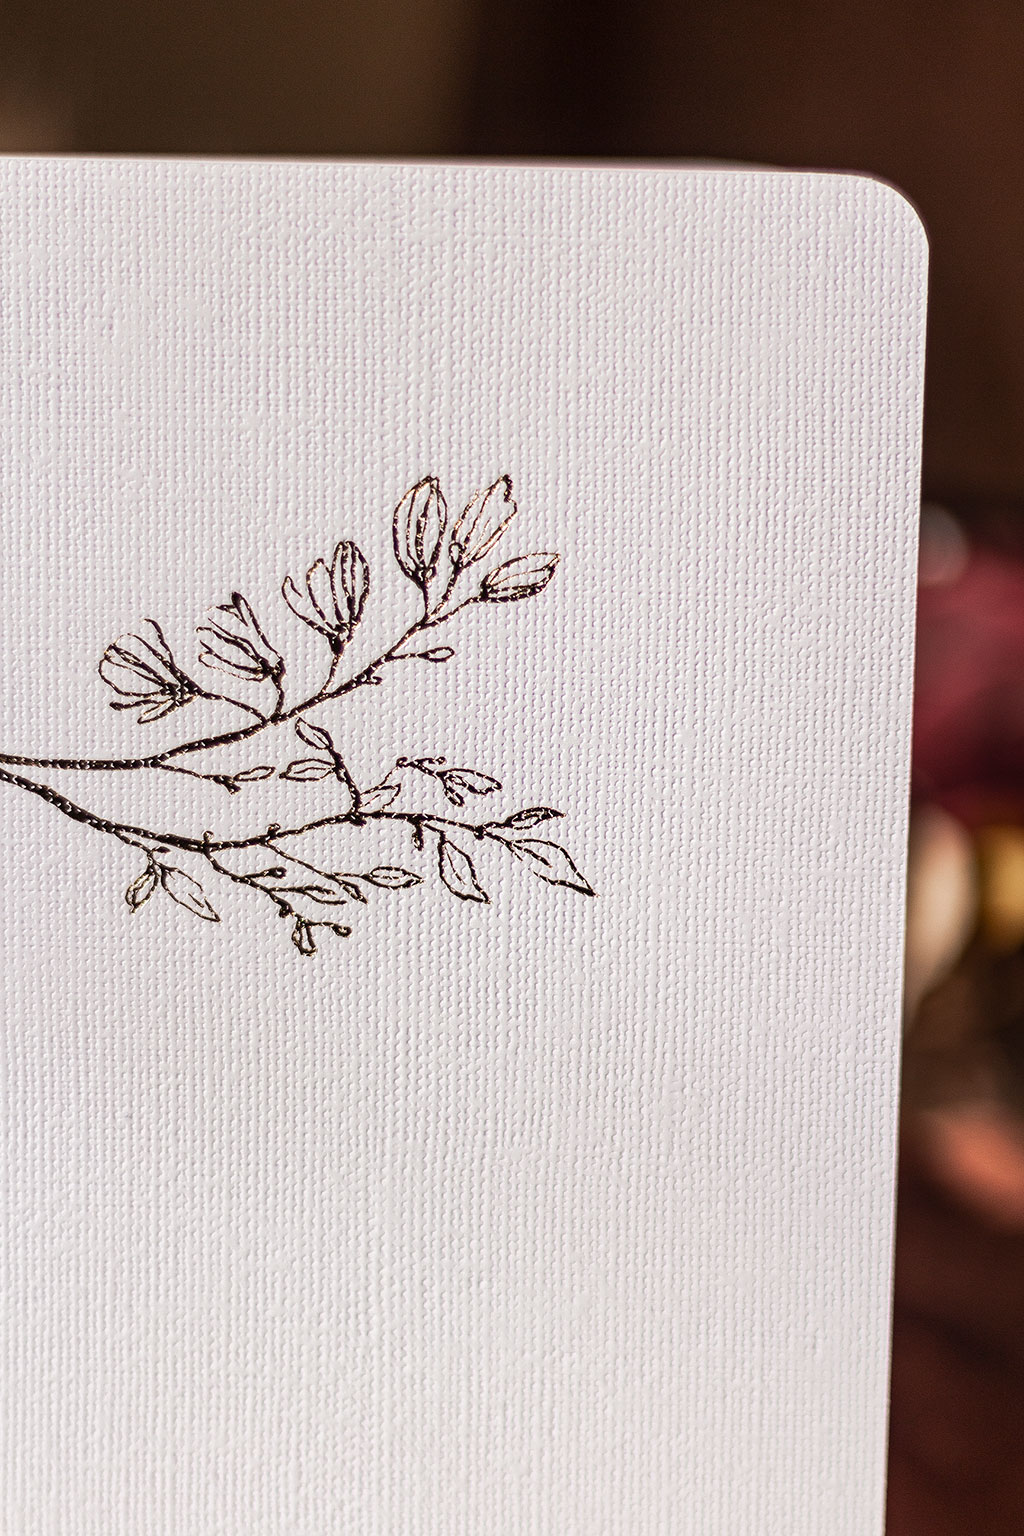 Fehér vászonfelületű füzet arany virággal prégelve: A/5, 64 oldalas, pontozott vonalas, fehér belívvel, sarokkerekített, egyedi paraméterekkel is rendelhető